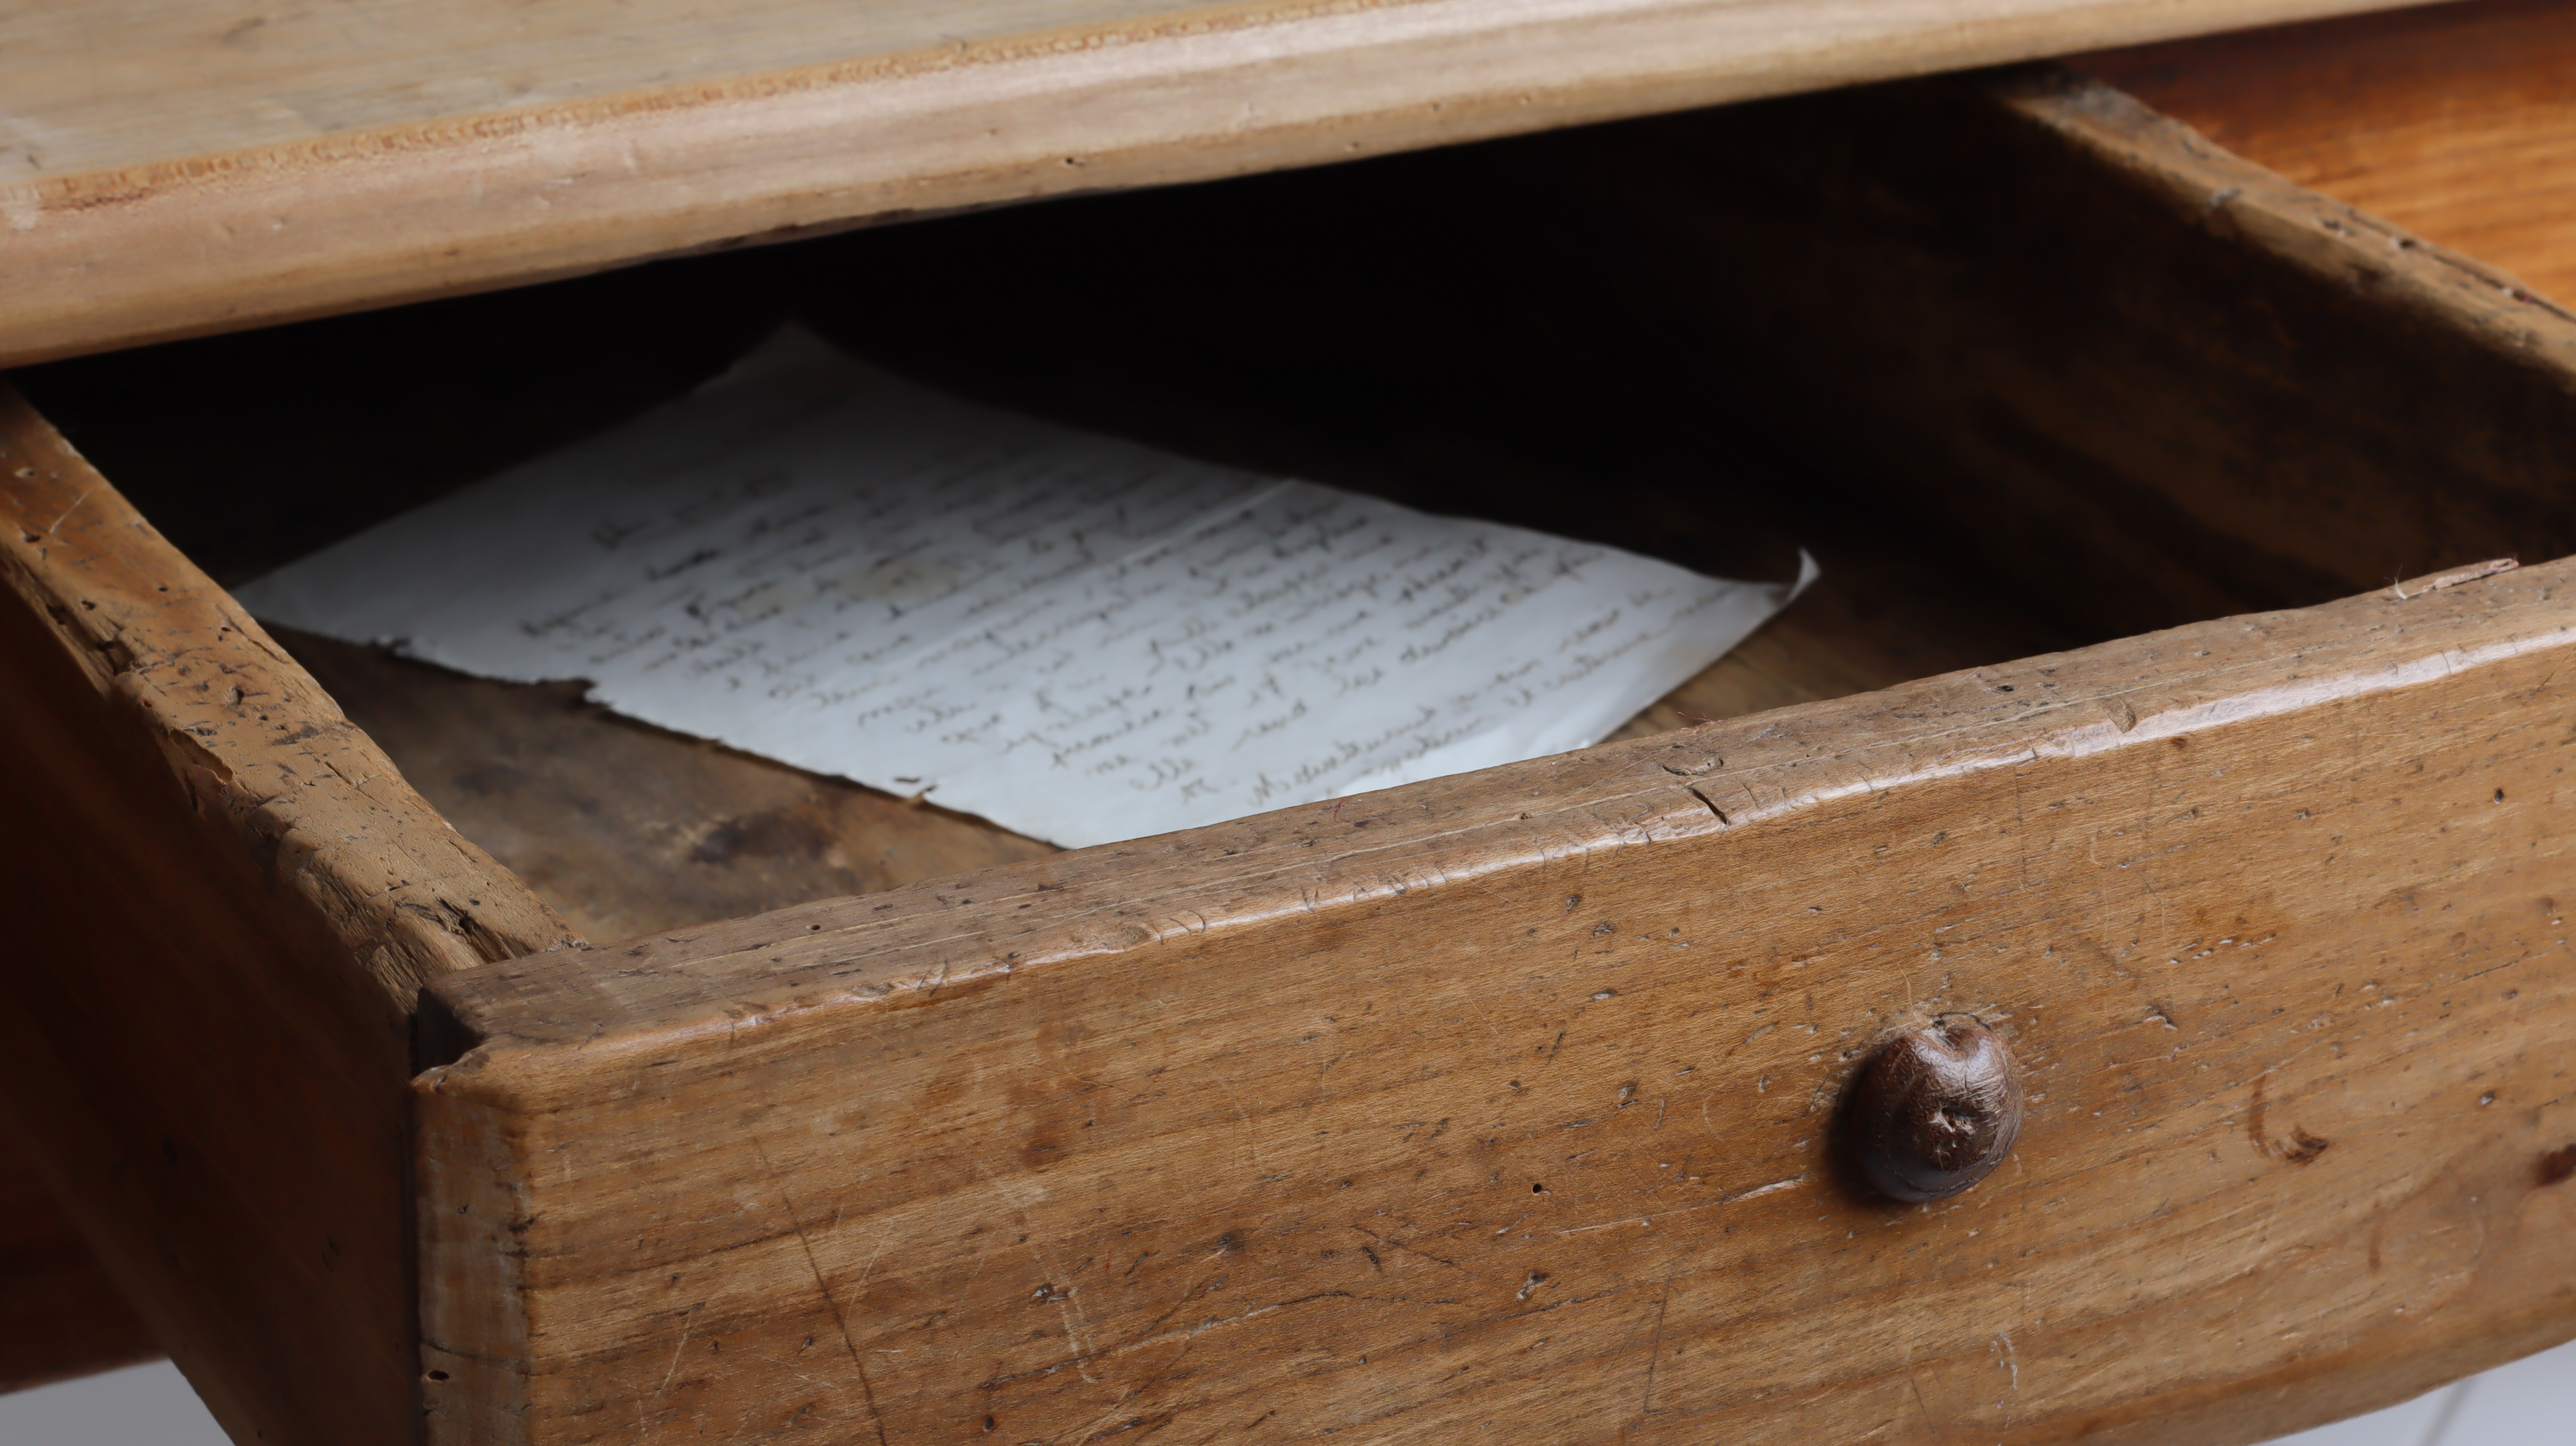 Cajón medio abierto de una vieja mesa de madera vintage con una vieja carta manuscrita en su interior | Foto: Shutterstock